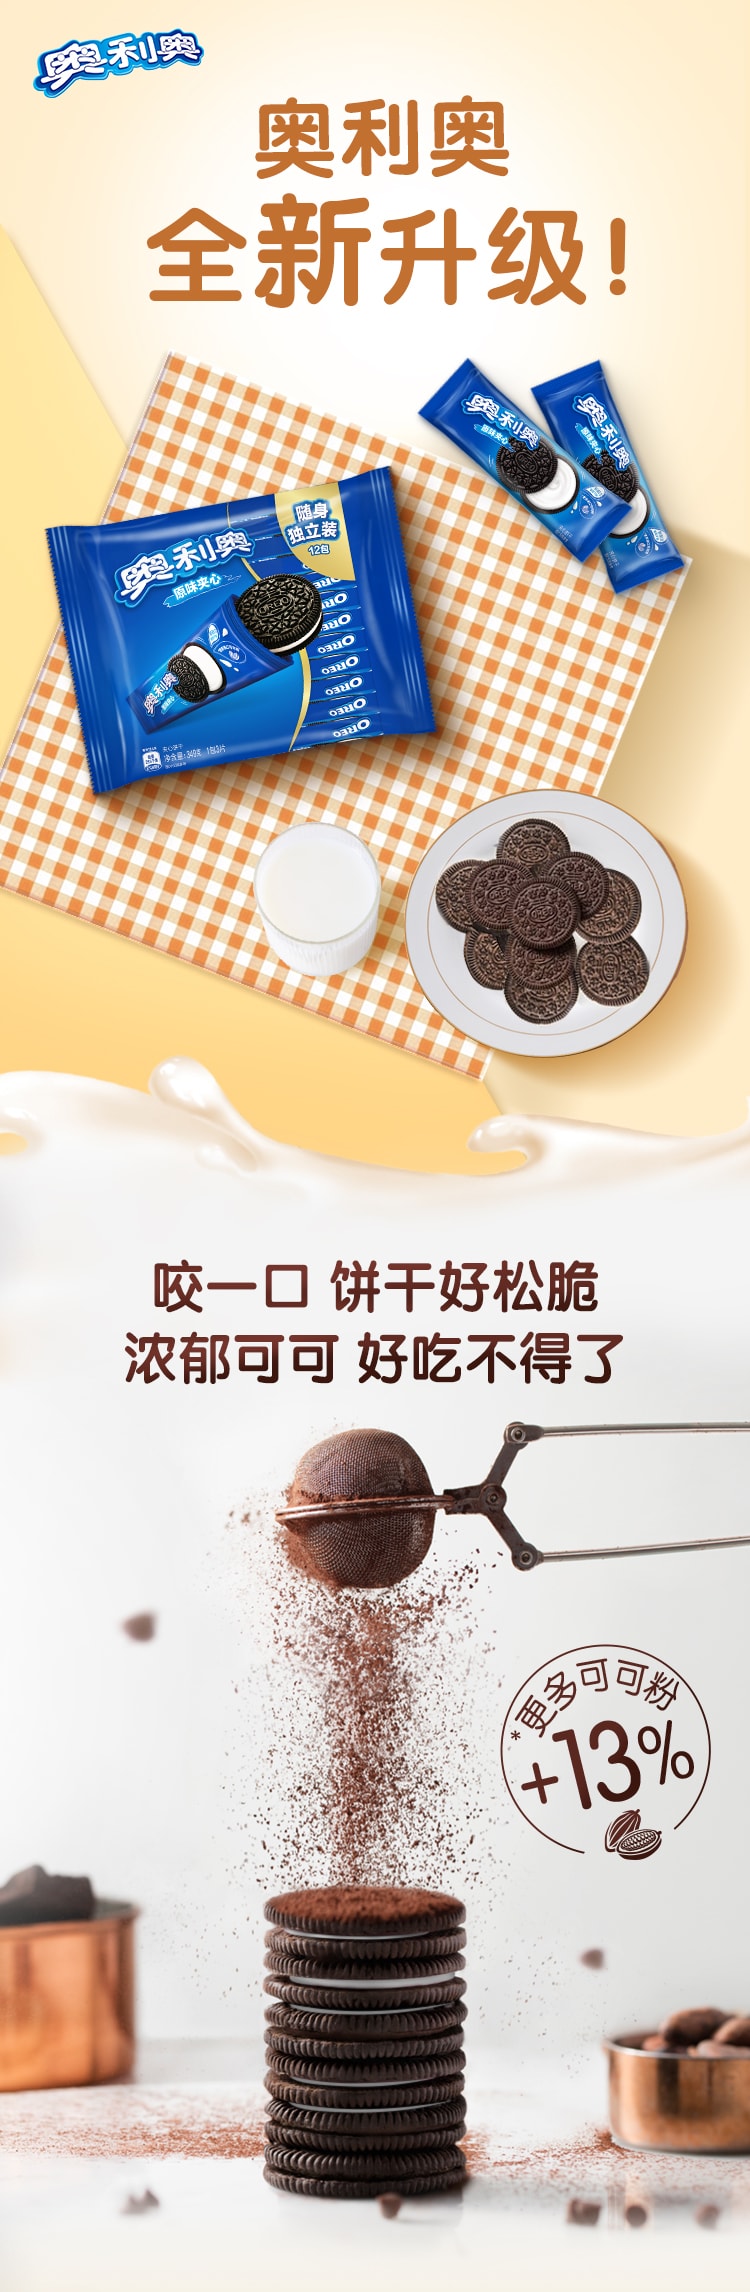 換包裝[中國直郵] 奧利奧 OREO 原味巧克力夾心餅乾349g 隨身獨立裝12小包 每小包/3片 網紅辦公室零食夾心餅乾 1包裝